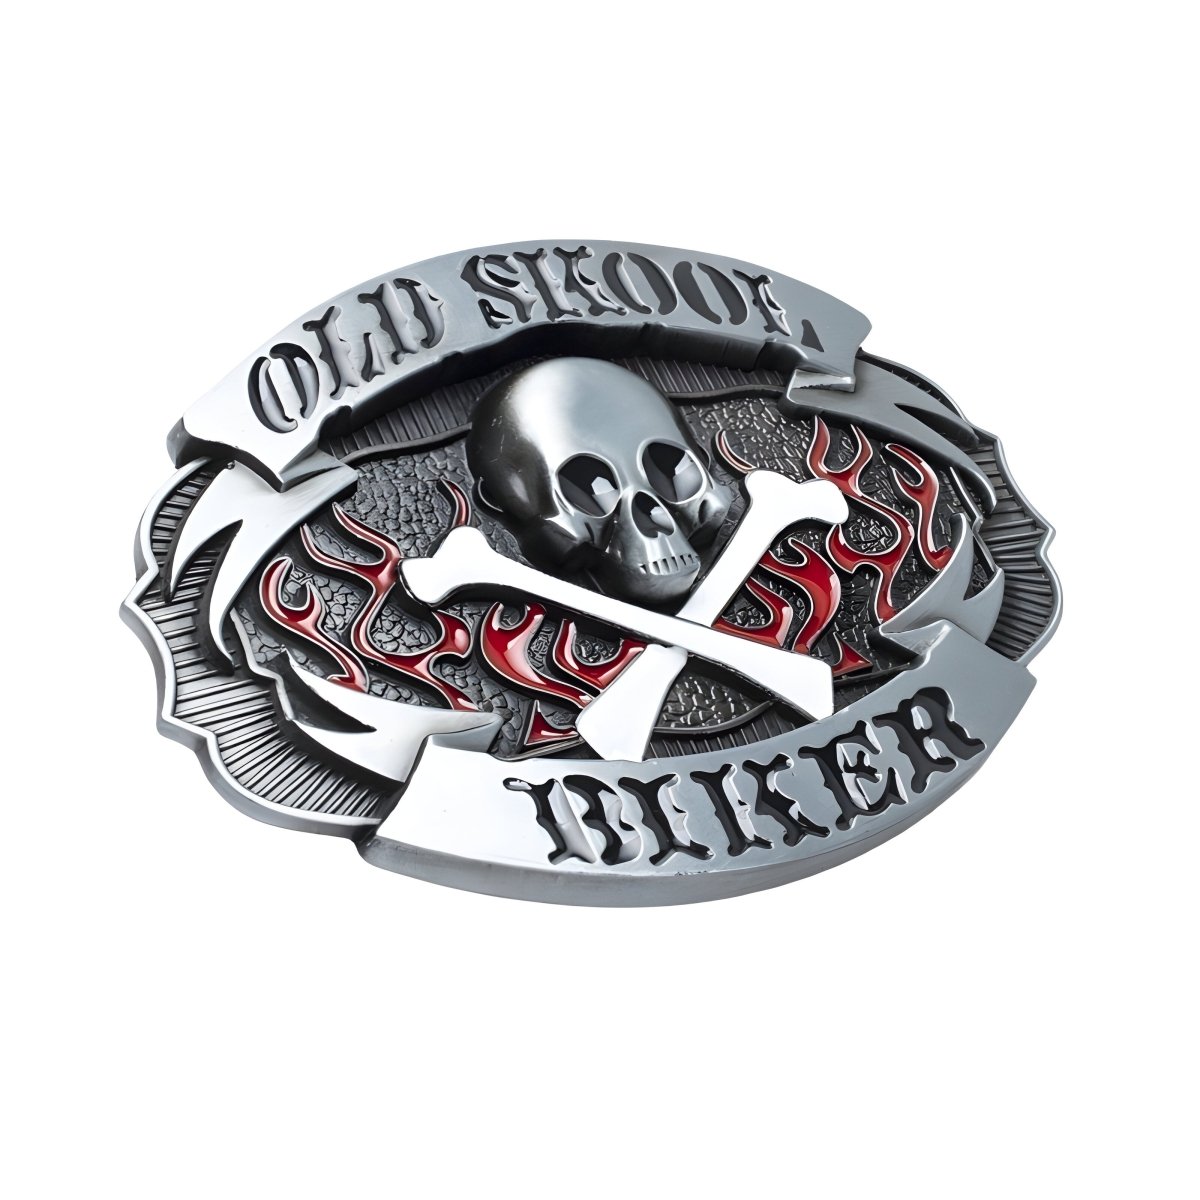 Boucle de ceinture Moto, "Old Skool Biker" modèle Carter - La Boutique de la Ceinture